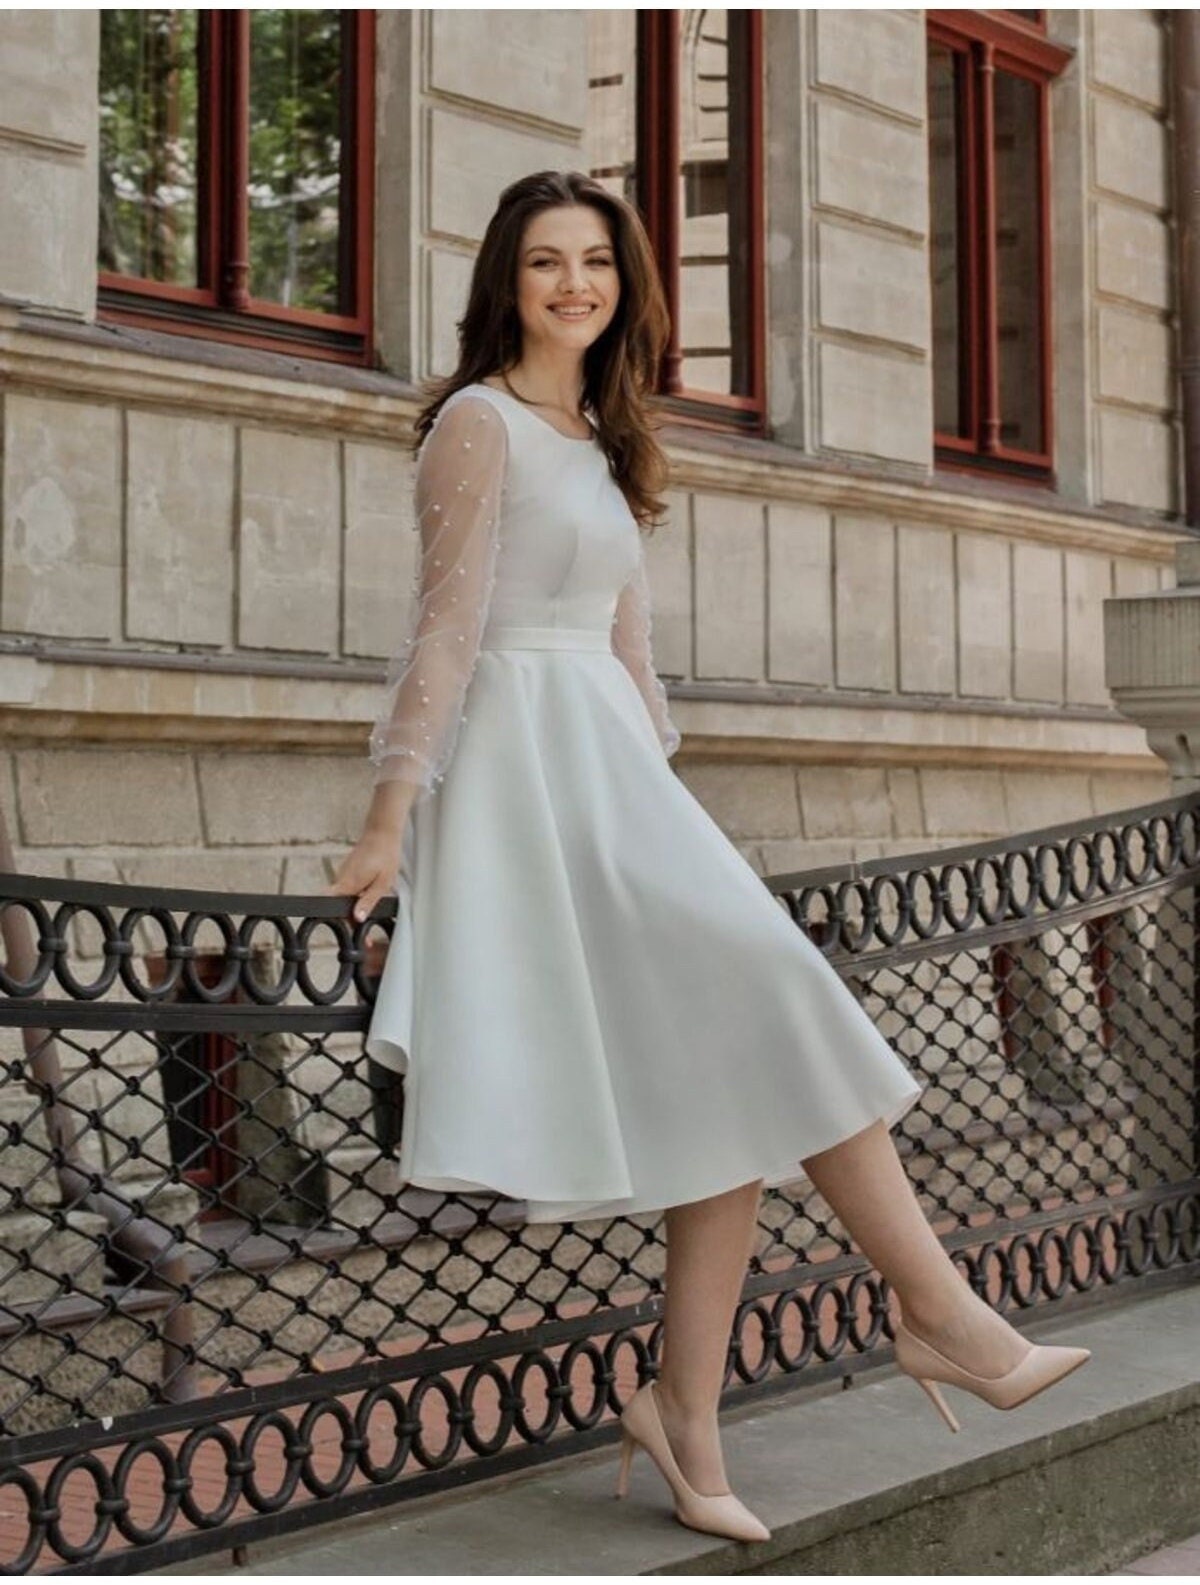 Short White Wedding Dress With Sleeves Modest Reception Dress Elope  Engagement Photoshoot Midi Dress Courthouse Wedding Dress -  Canada